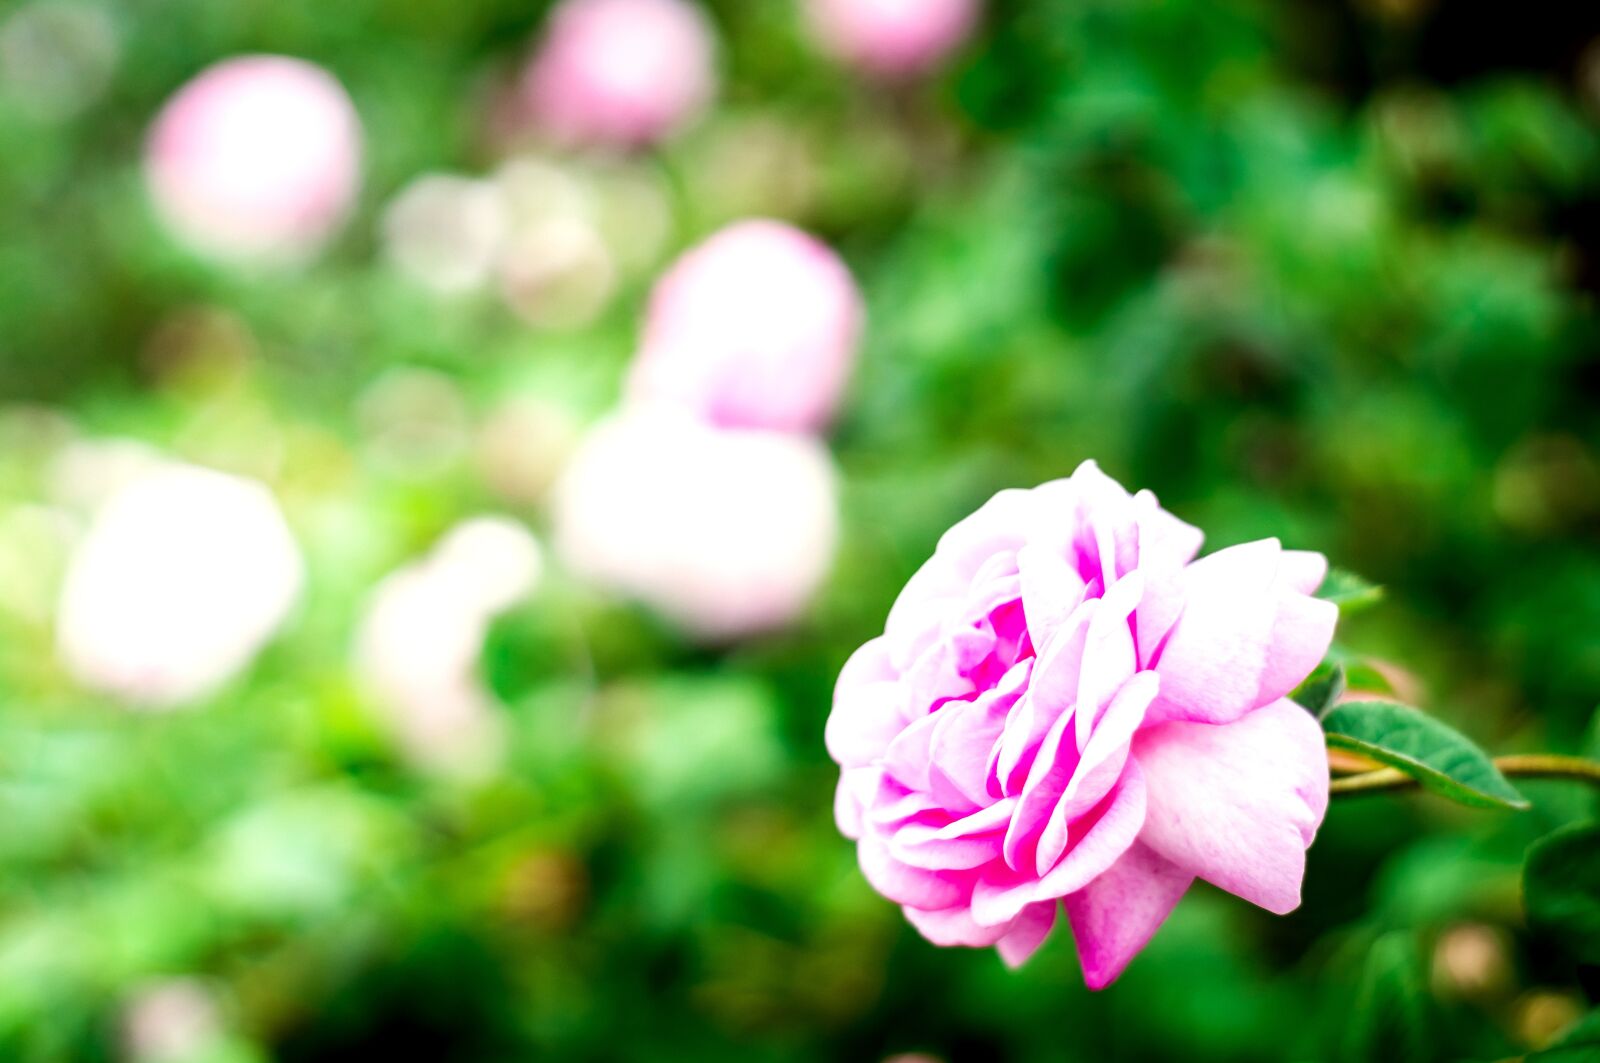 Sony SLT-A37 + Minolta AF 50mm F1.7 sample photo. Flower, rose, nature photography